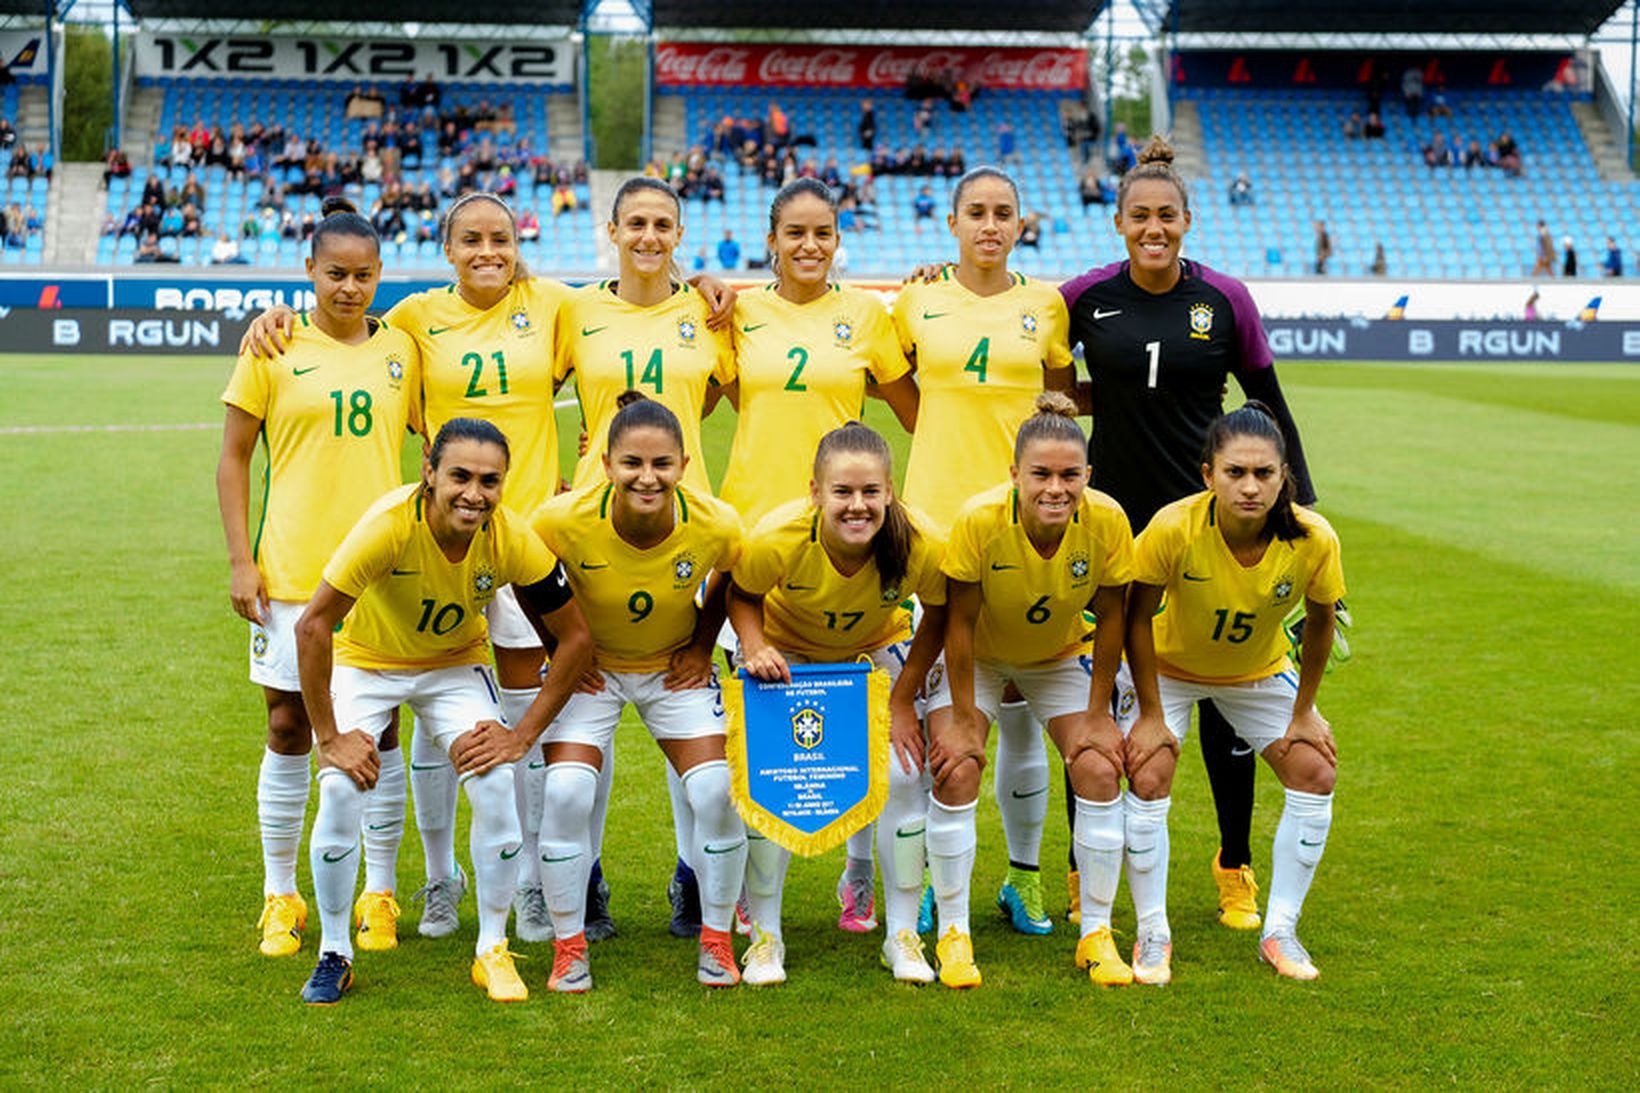 Brasilíska landsliðið sem vann Ísland 1:0 á Laugardalsvellinum síðasta sumar.